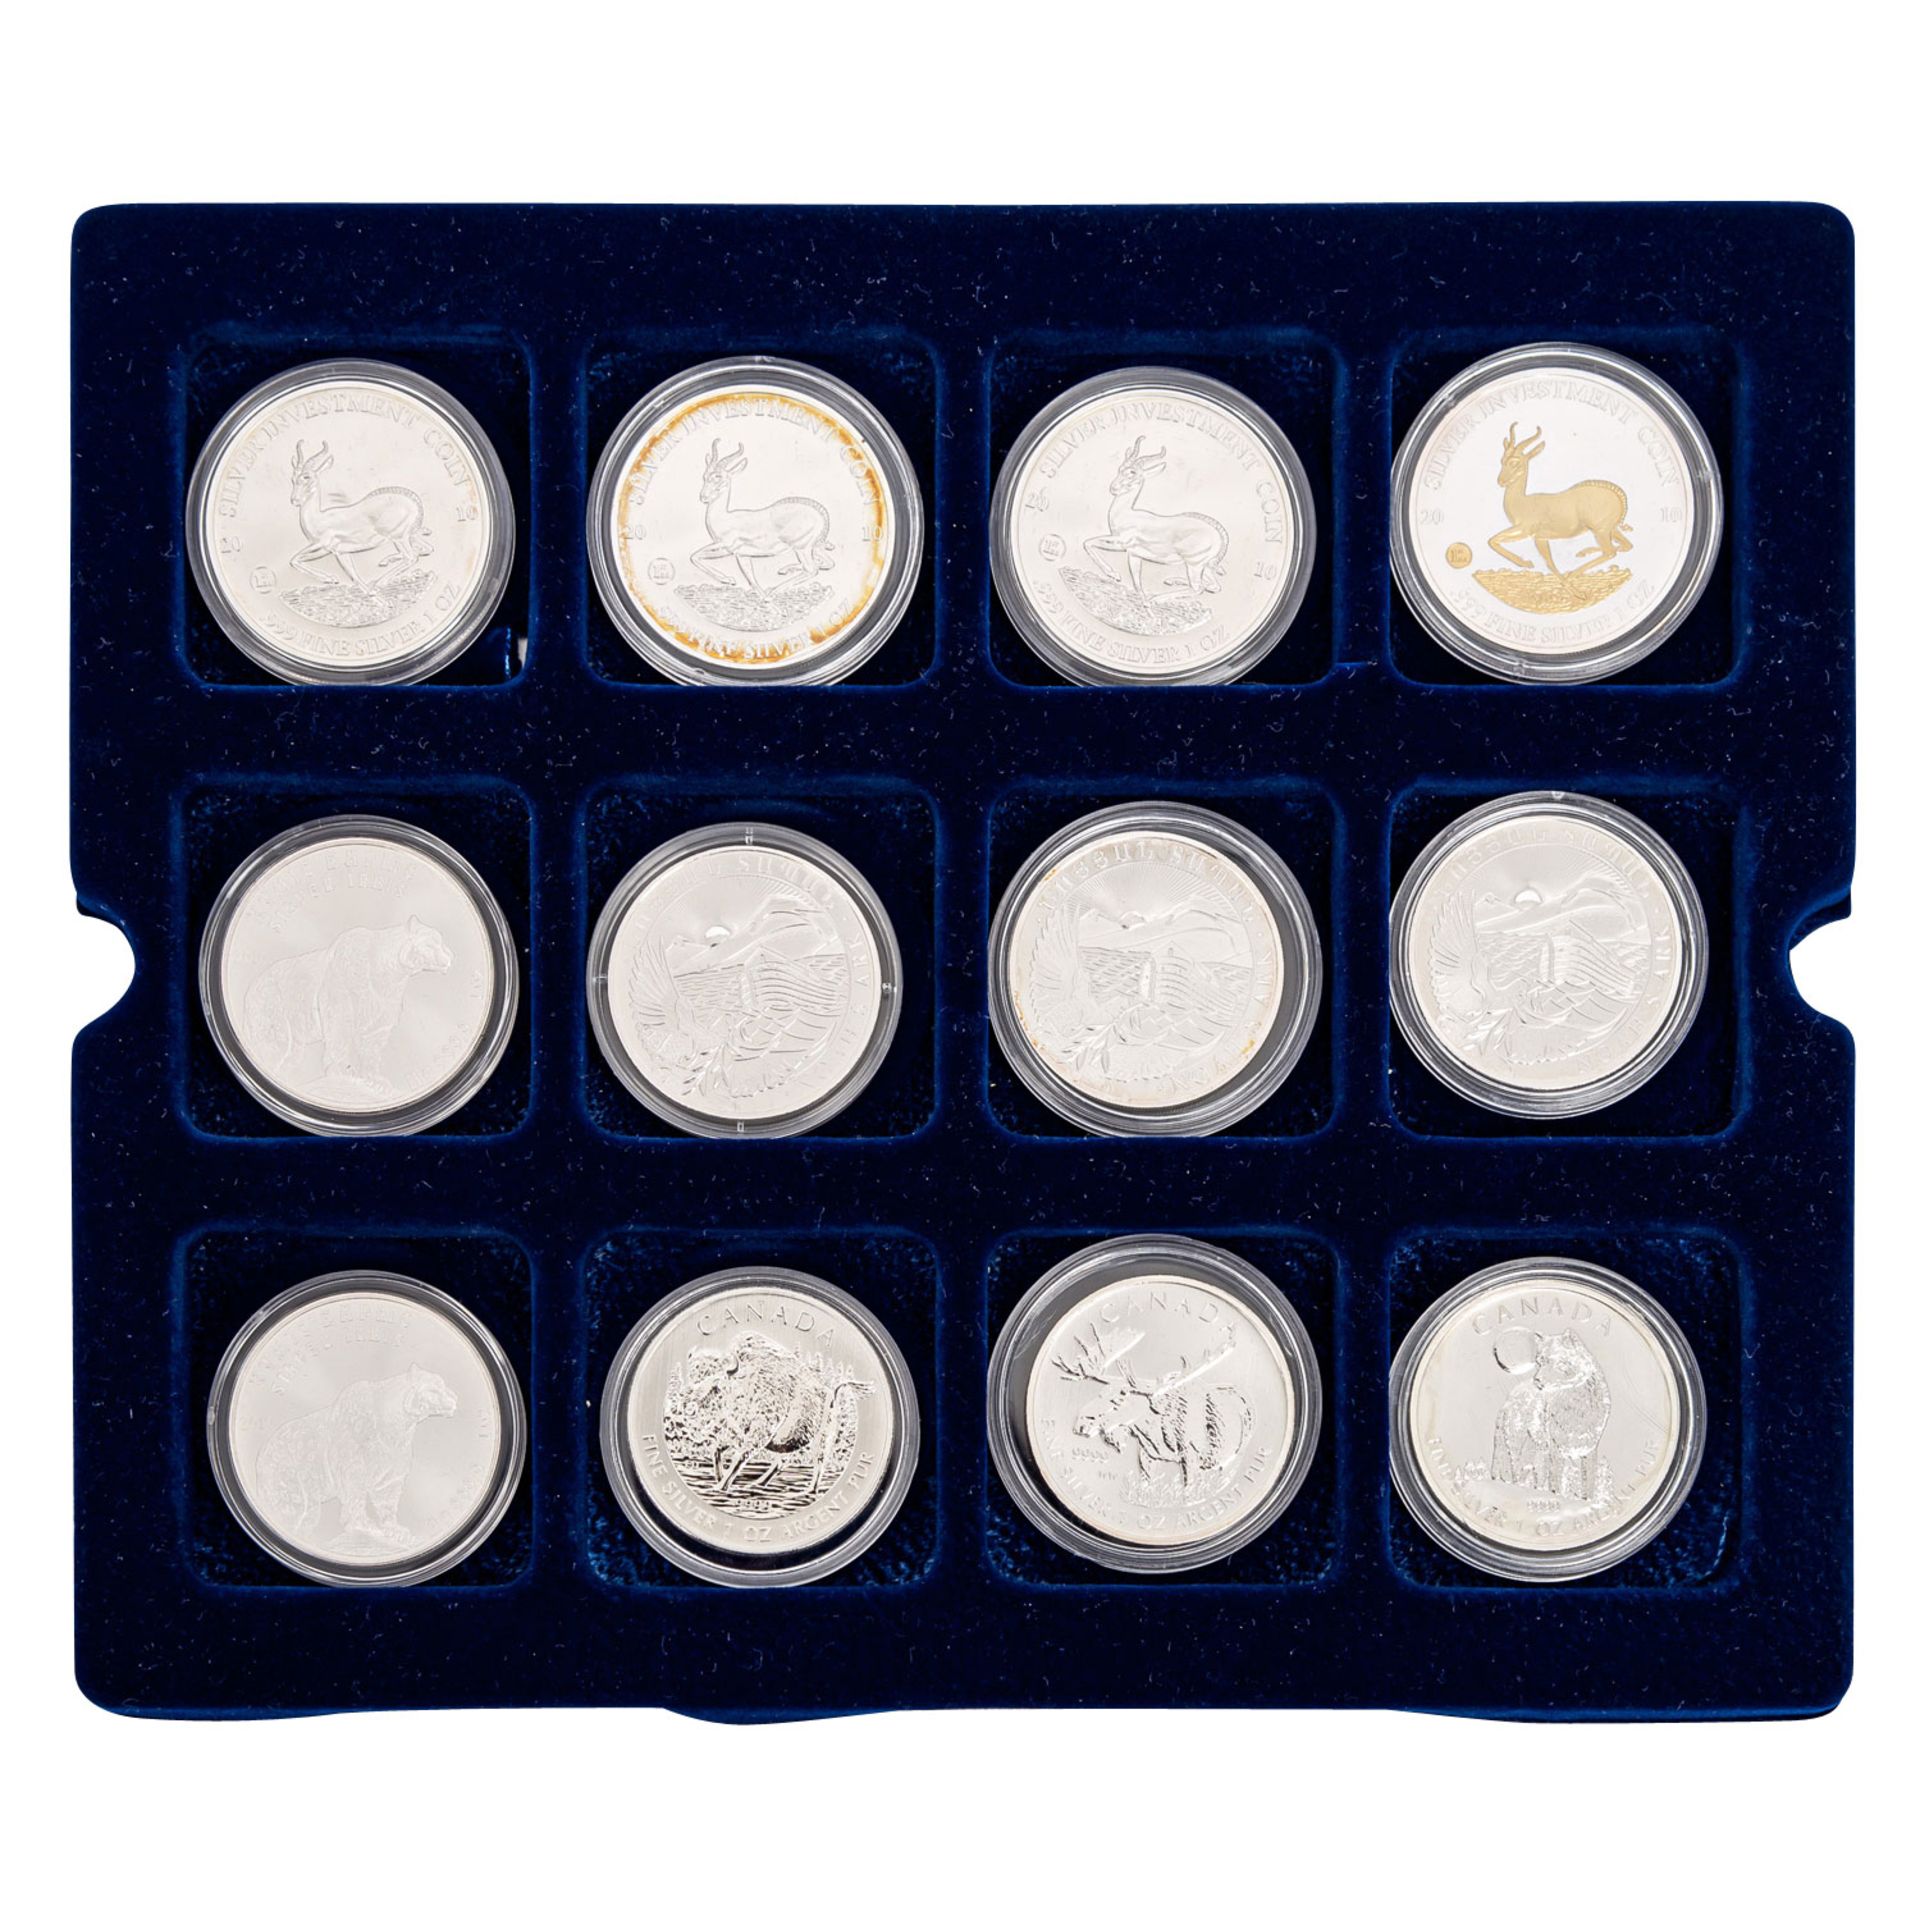 SILBERUNZEN - Holzbox mit 34 Münzen,davon 32 Unzen, 1 weitere Unze als Medaille sowie 1/2 Unze - Bild 2 aus 4